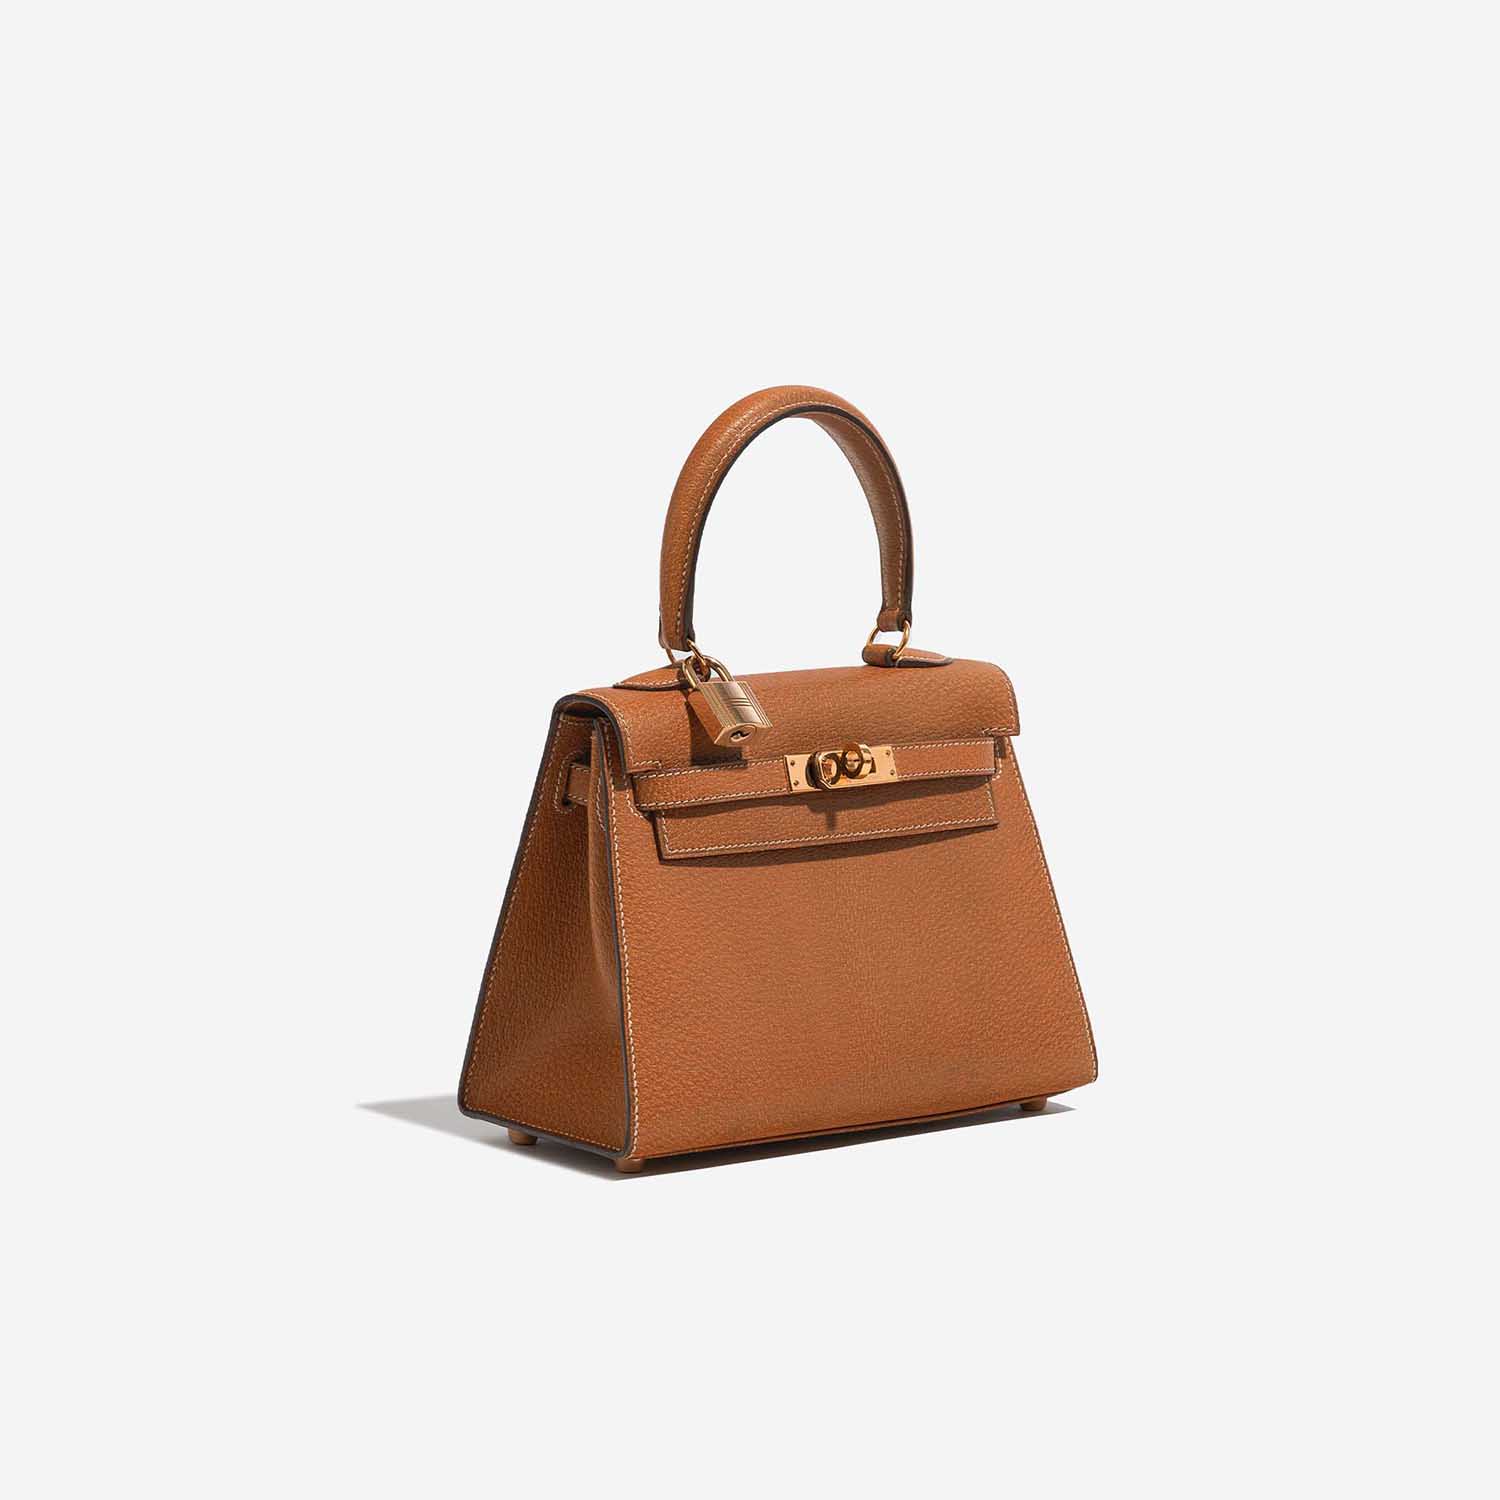 Pre-owned Hermès Tasche Kelly Mini Porc Gold Brown Side Front | Verkaufen Sie Ihre Designer-Tasche auf Saclab.com